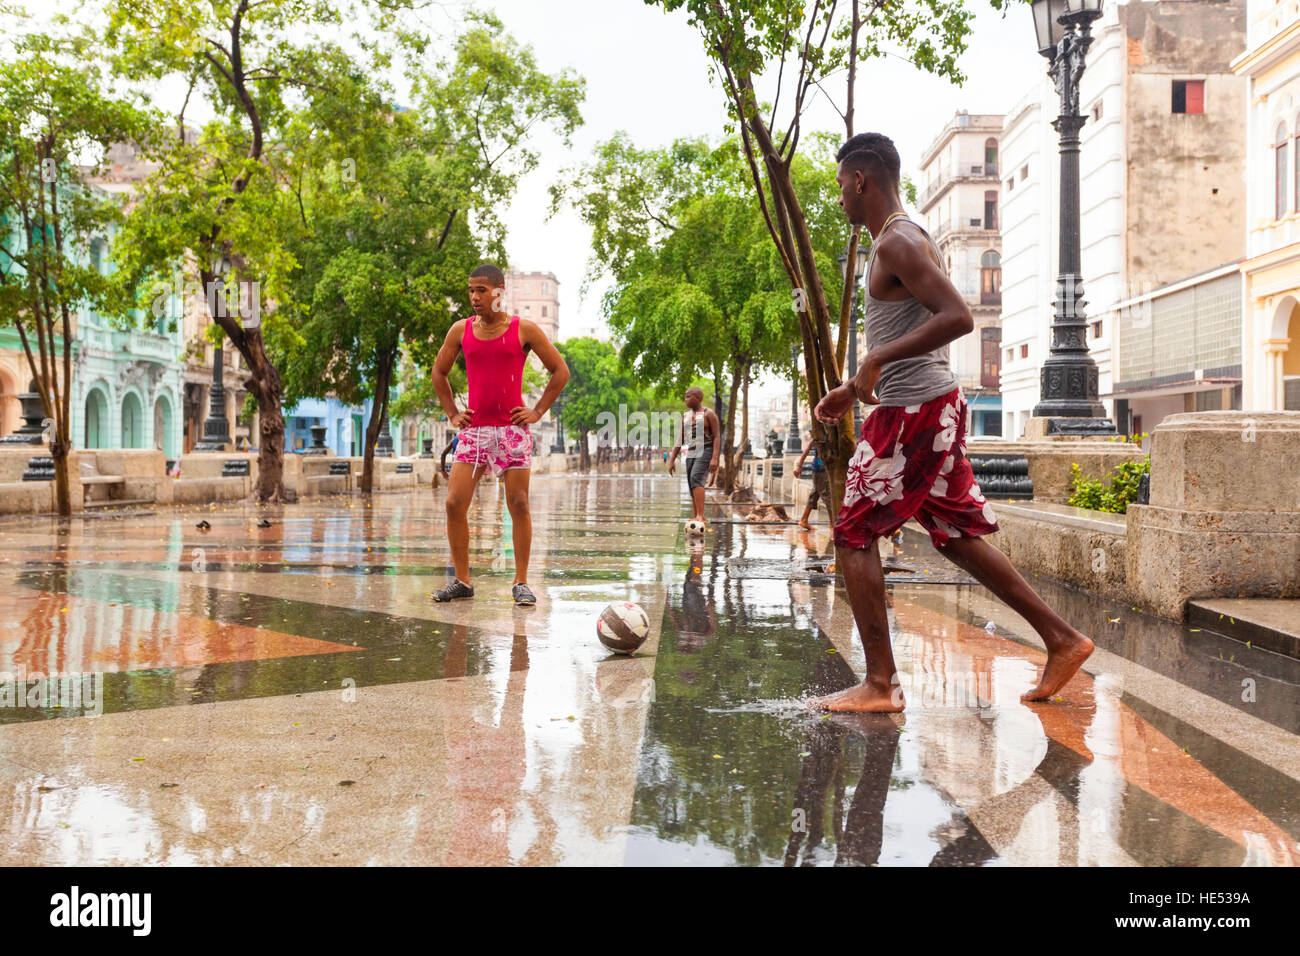 Les adolescents jouent au soccer (football) dans la pluie le long de Paseo de Marti dans la Vieille Havane, Cuba. Banque D'Images